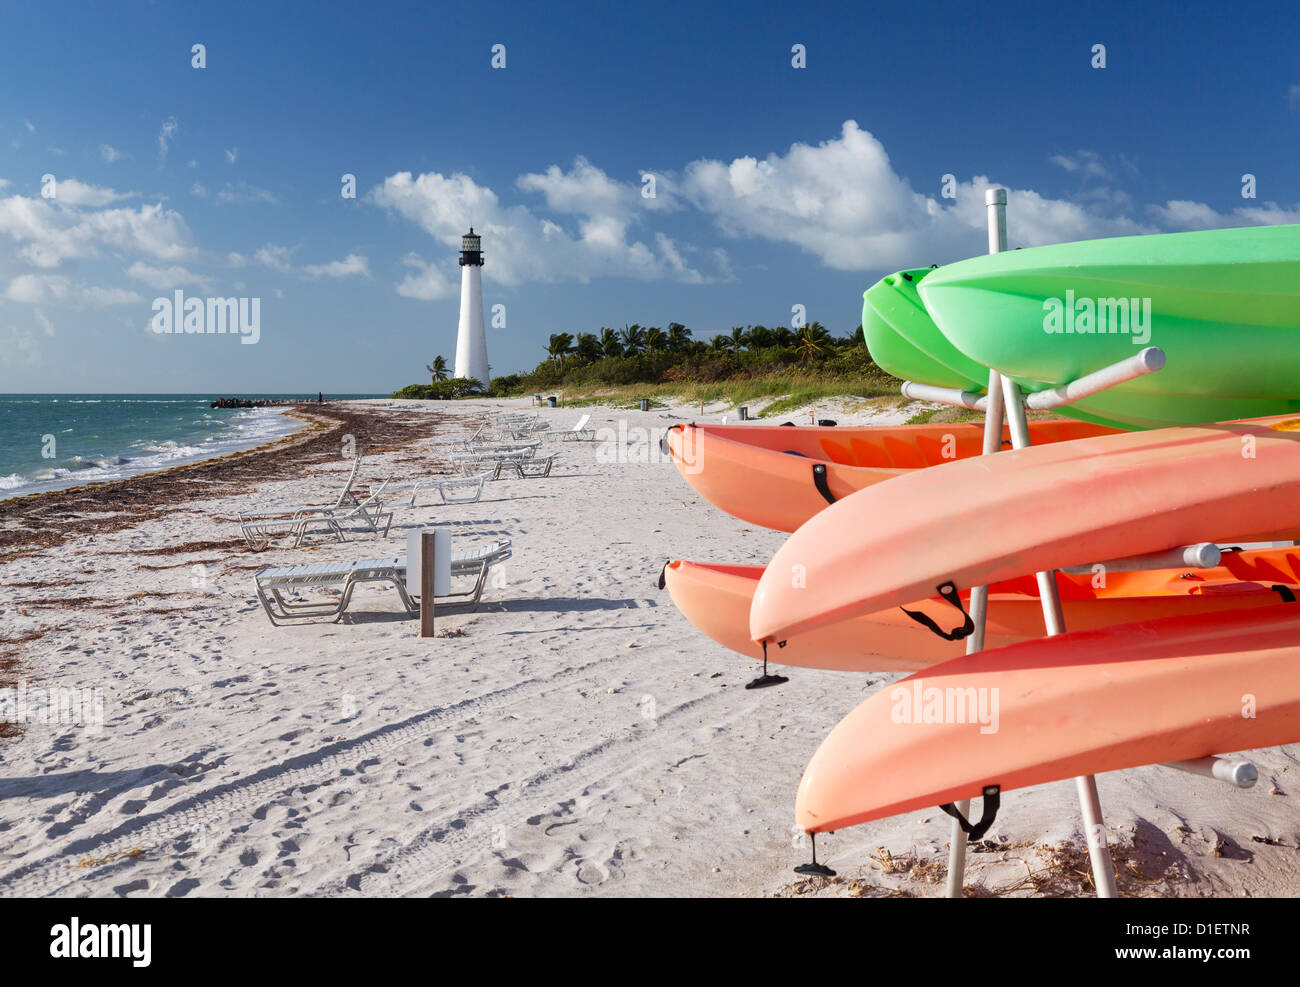 Florida Keys : Cape Florida Lighthouse en parc national Bill Baggs à Key Biscayne en Floride avec location de canoës kayaks Banque D'Images